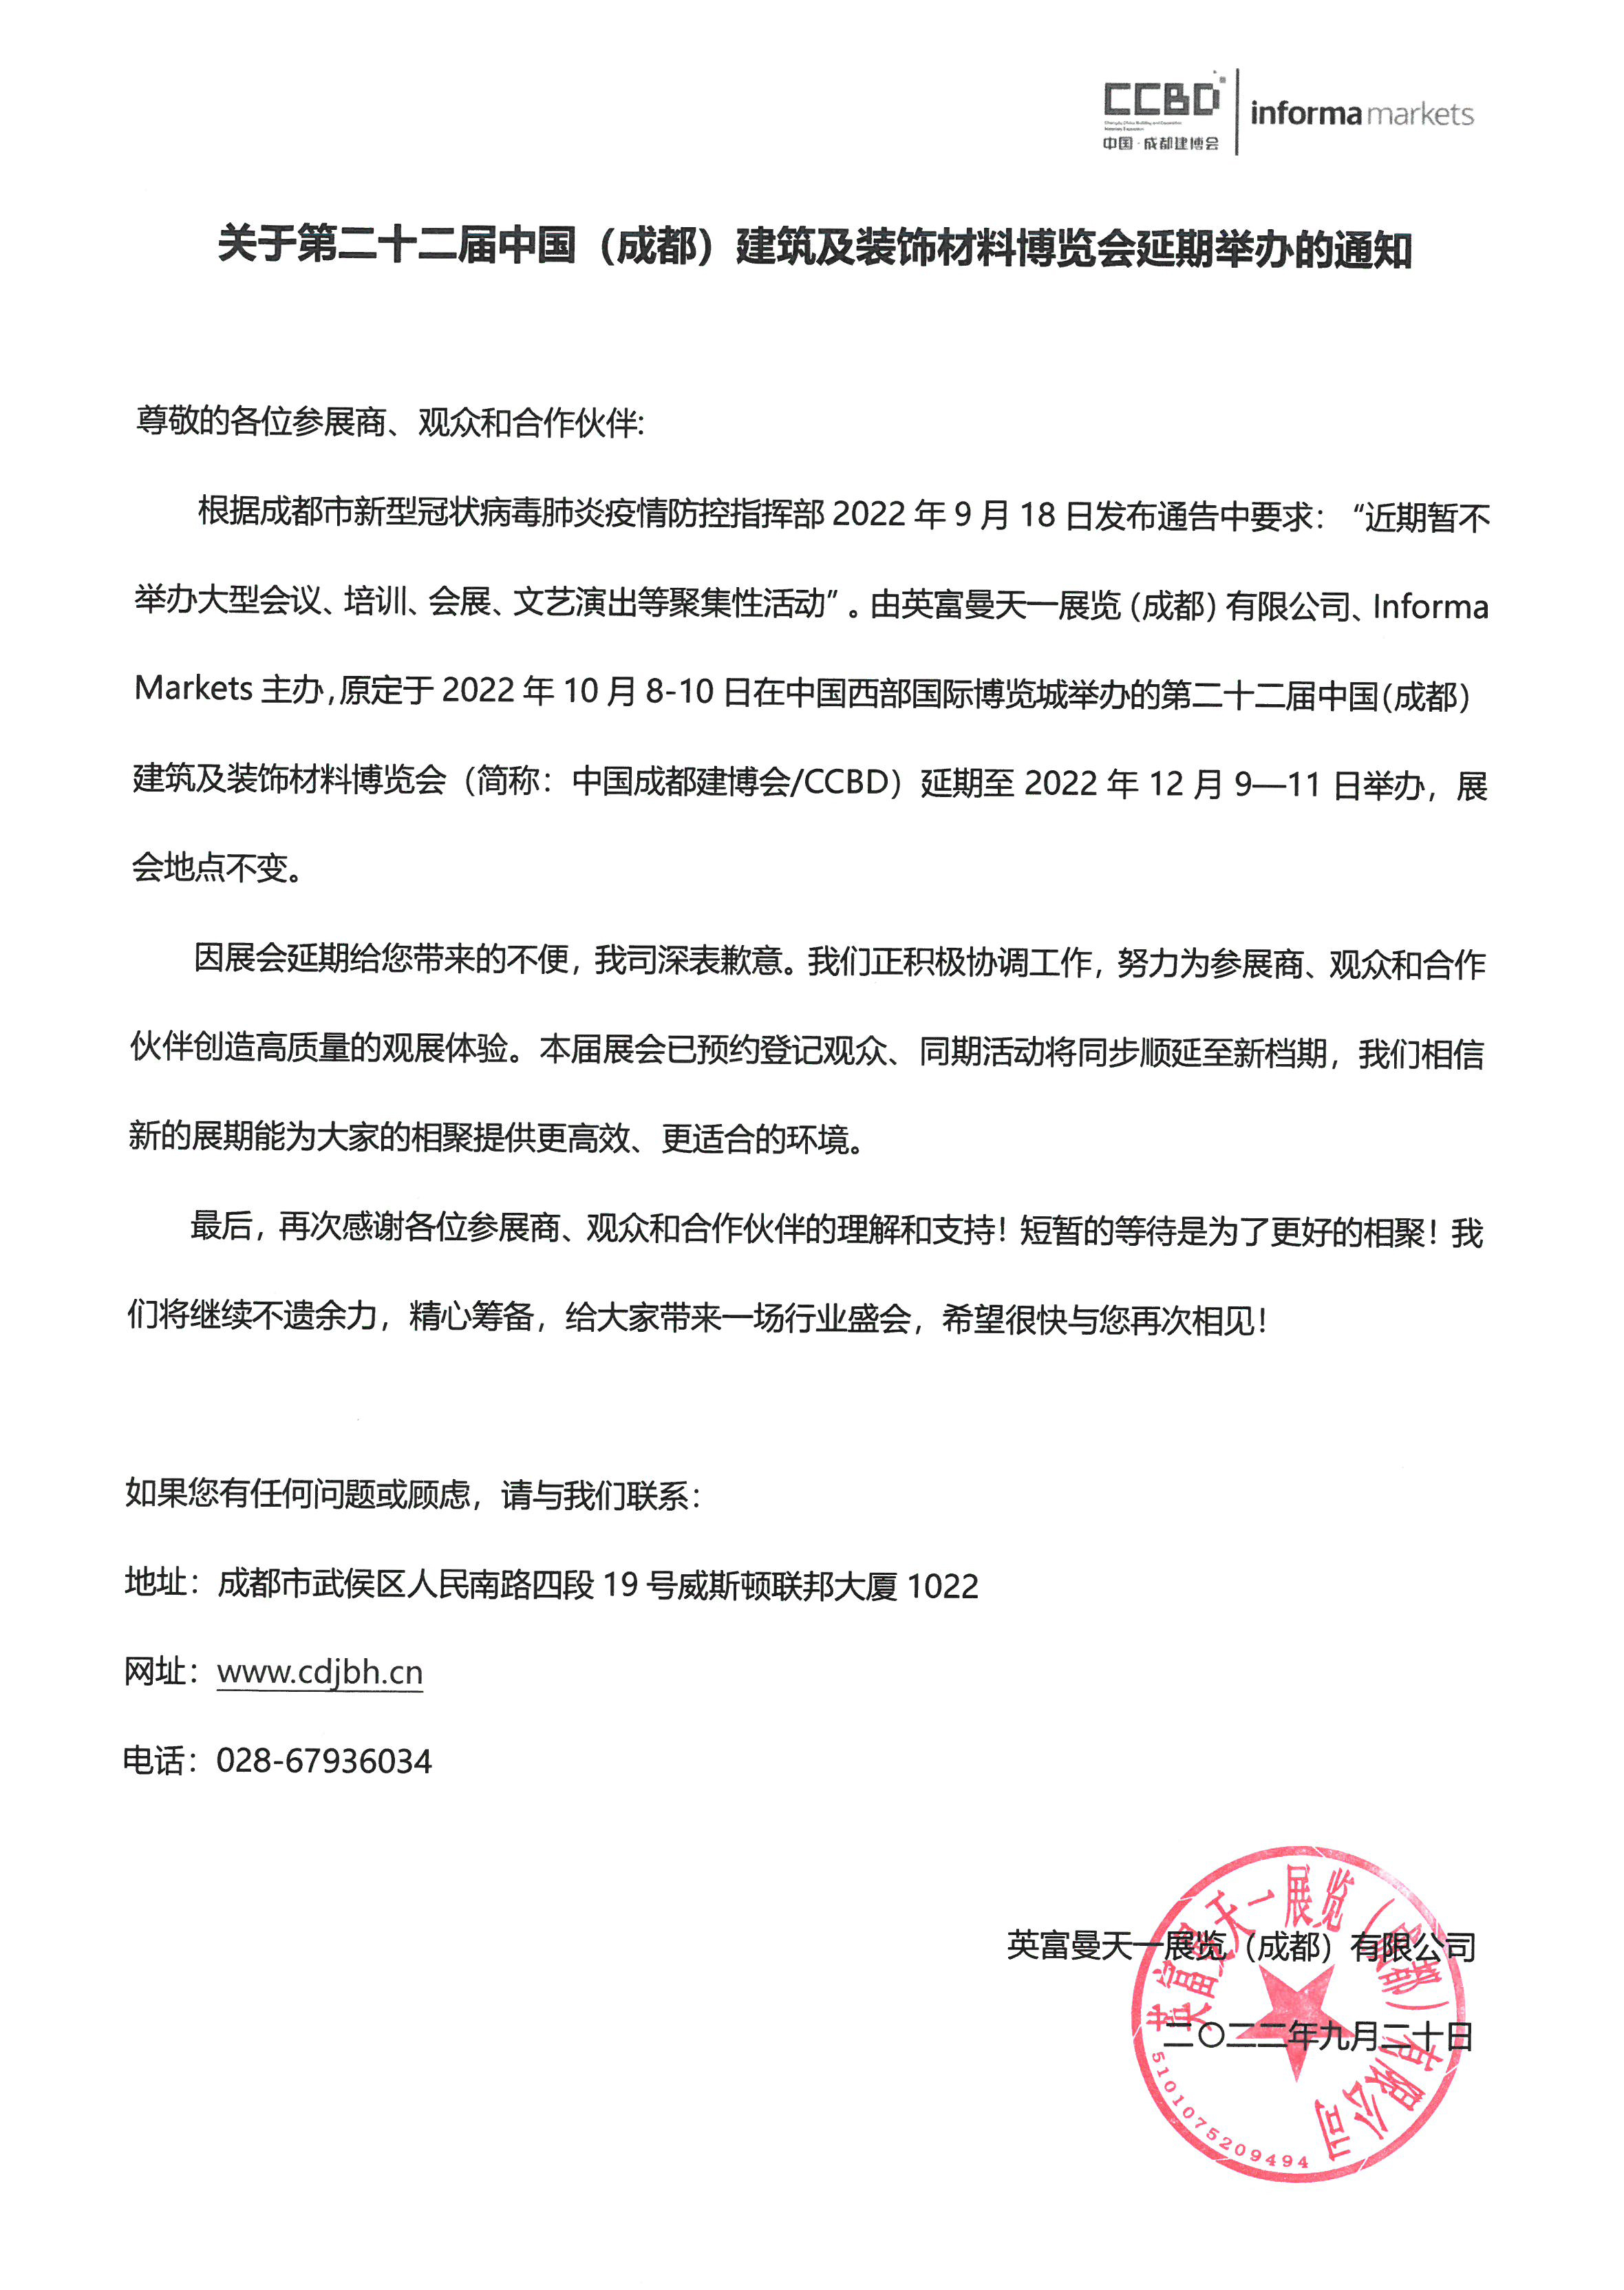 关于第二十二届中国成都建博会延期至12月9—11日的通知(图2)